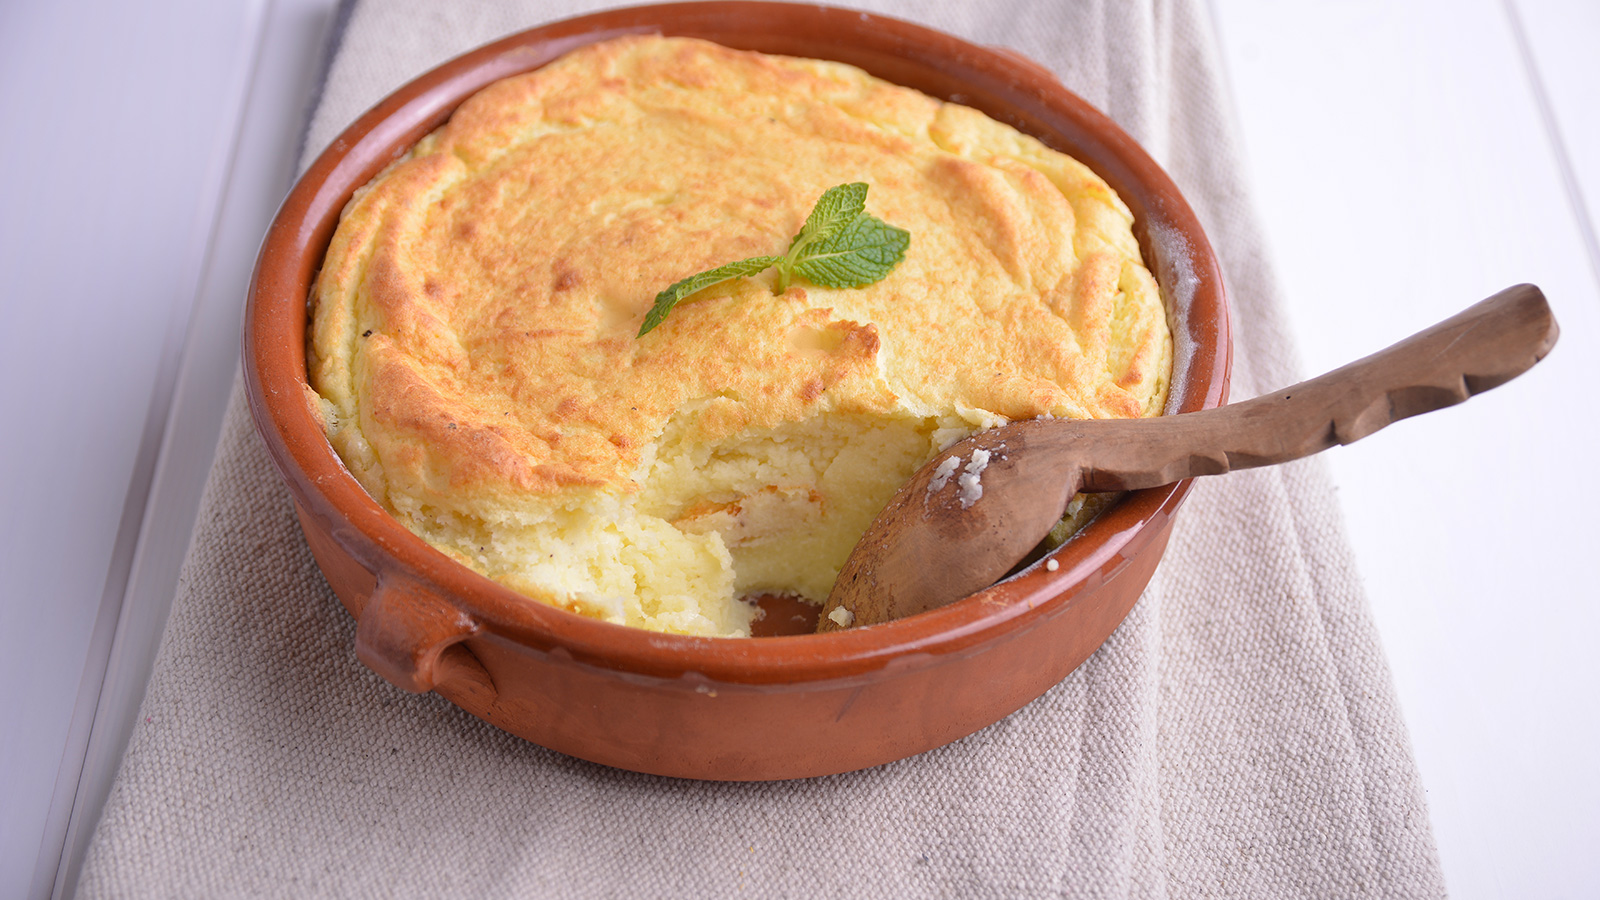 Soufflé de patata y queso - Sor Lucia Caram - Receta - Canal Cocina